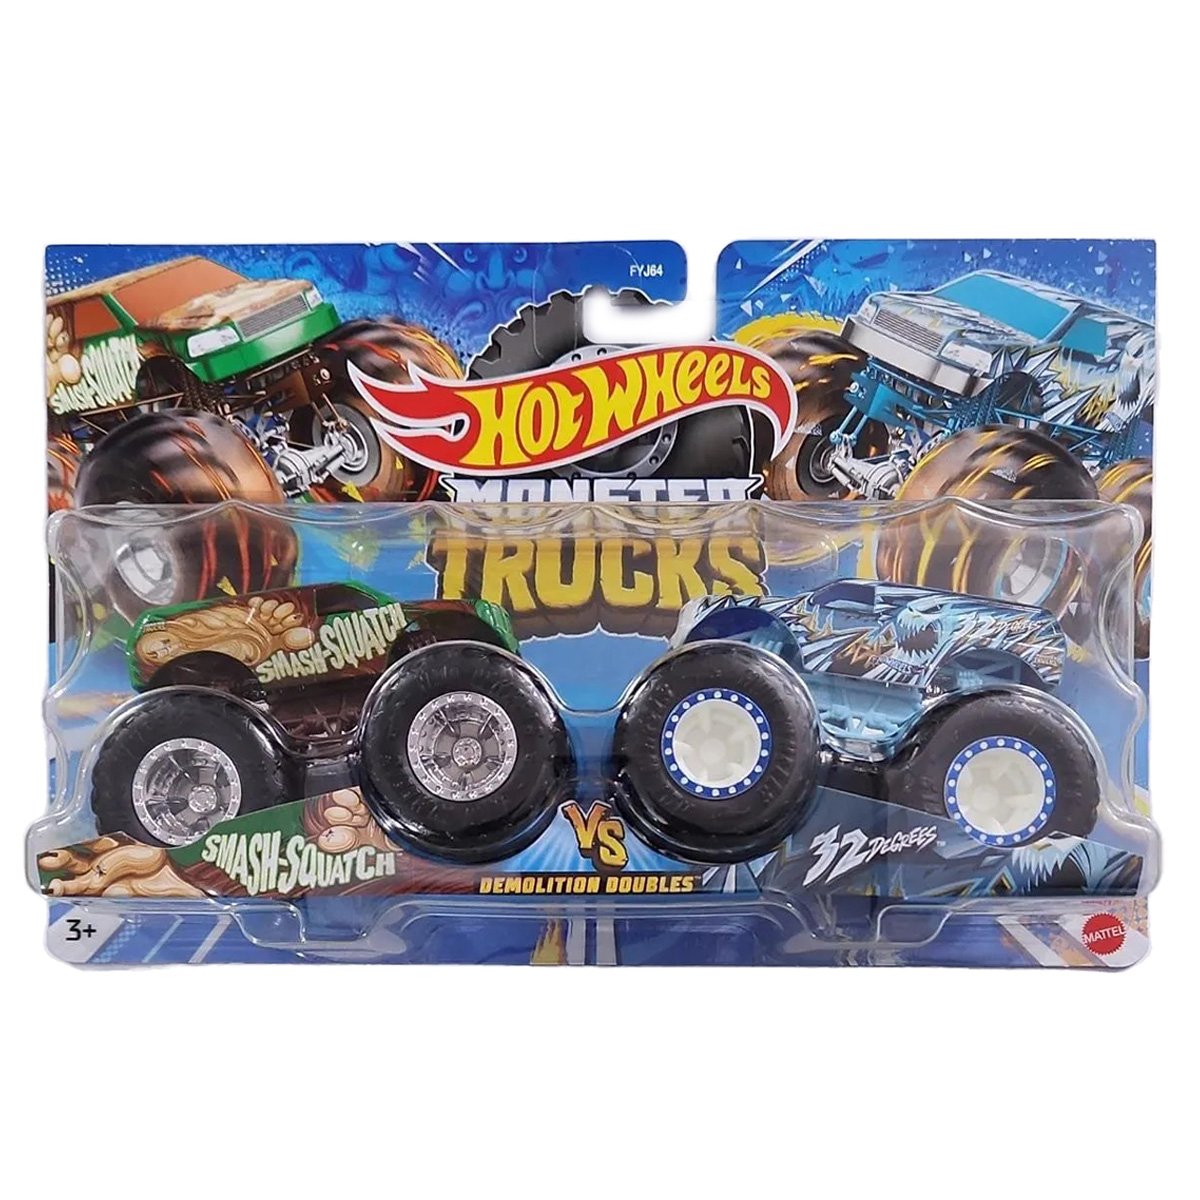 Set 2 masini Monster Truck, Hot Wheels, Smash-squatch si 32 Degrees, 1:64, HLT65